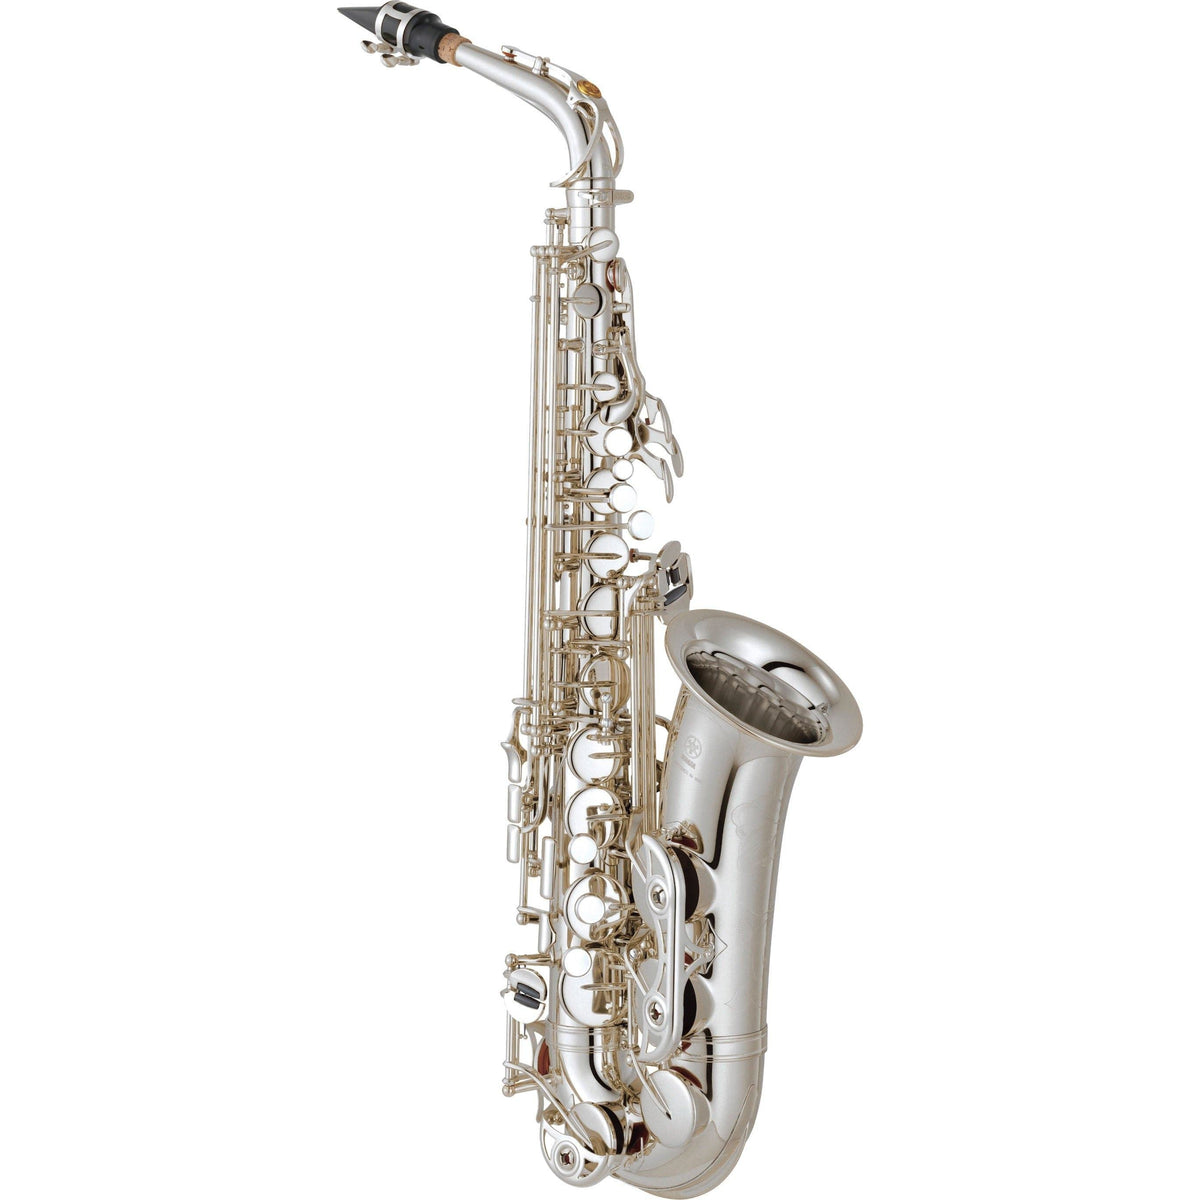 Yamaha - YAS-62S - Professional Alto Saxophone-Saxophone-Yamaha-Music Elements